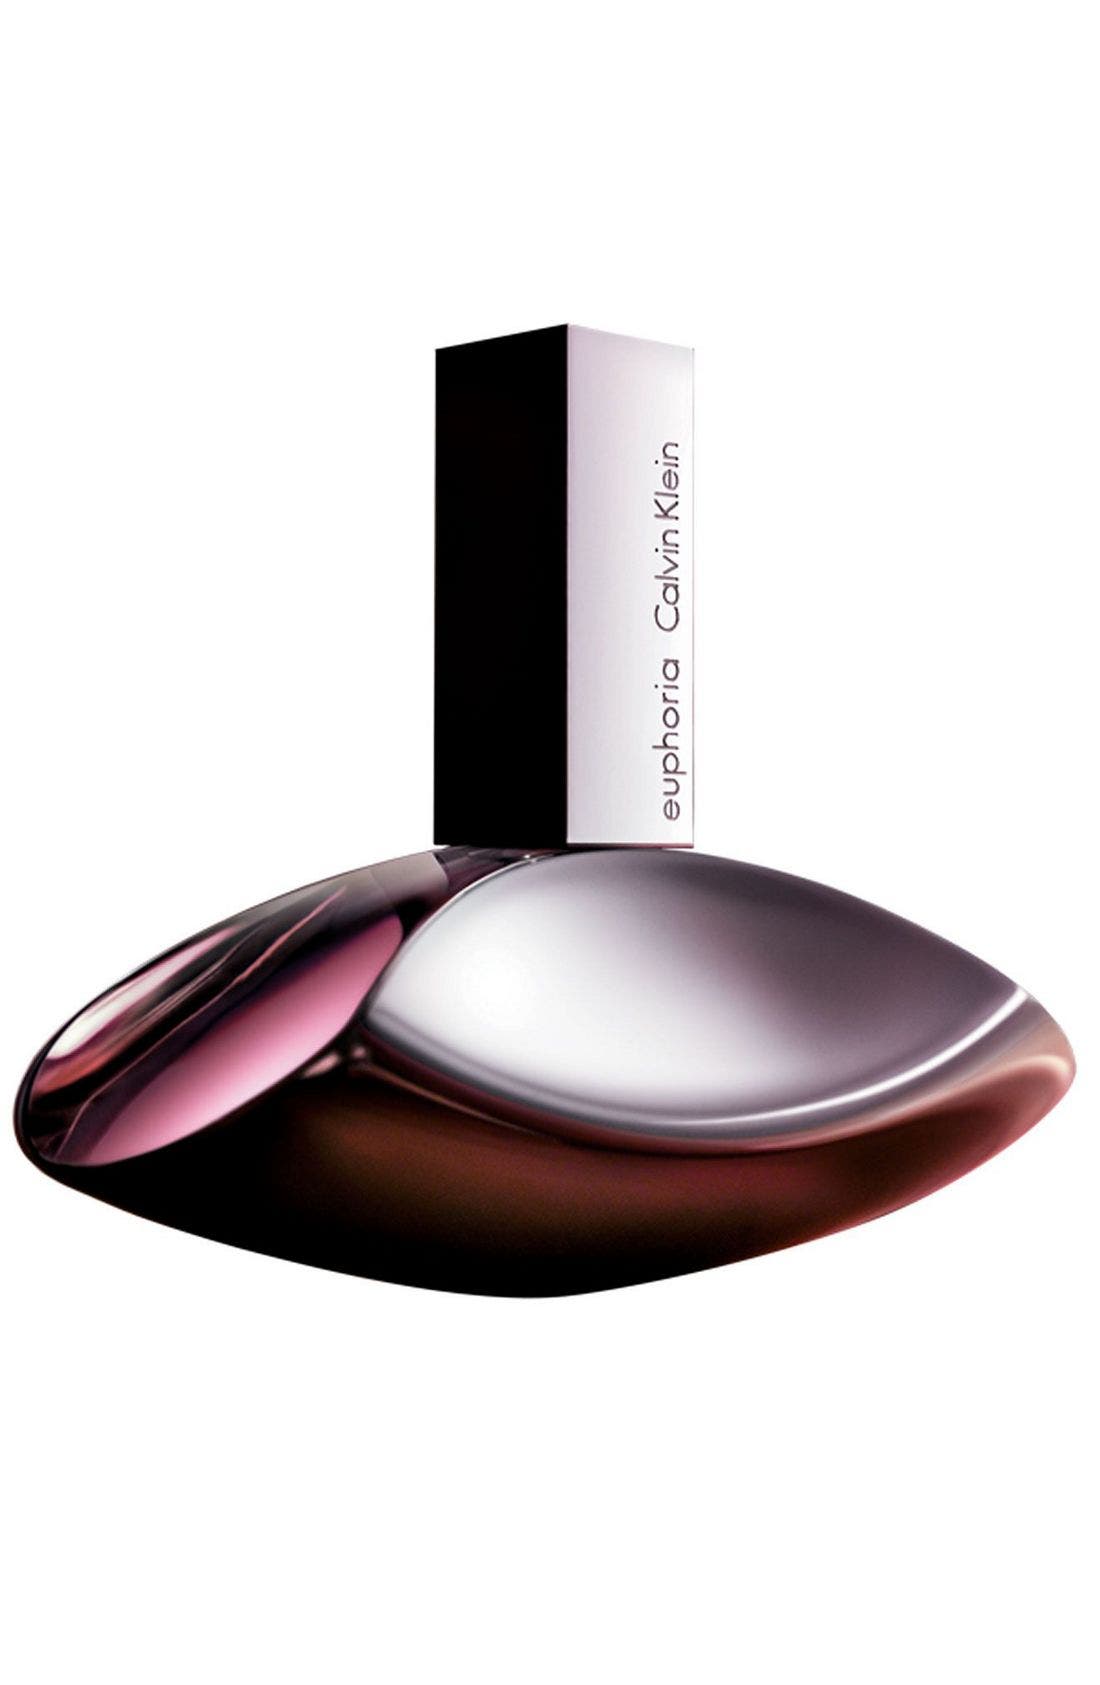 UPC 088300162543 product image for Euphoria by Calvin Klein Eau de Parfum Spray 1.7 oz | upcitemdb.com